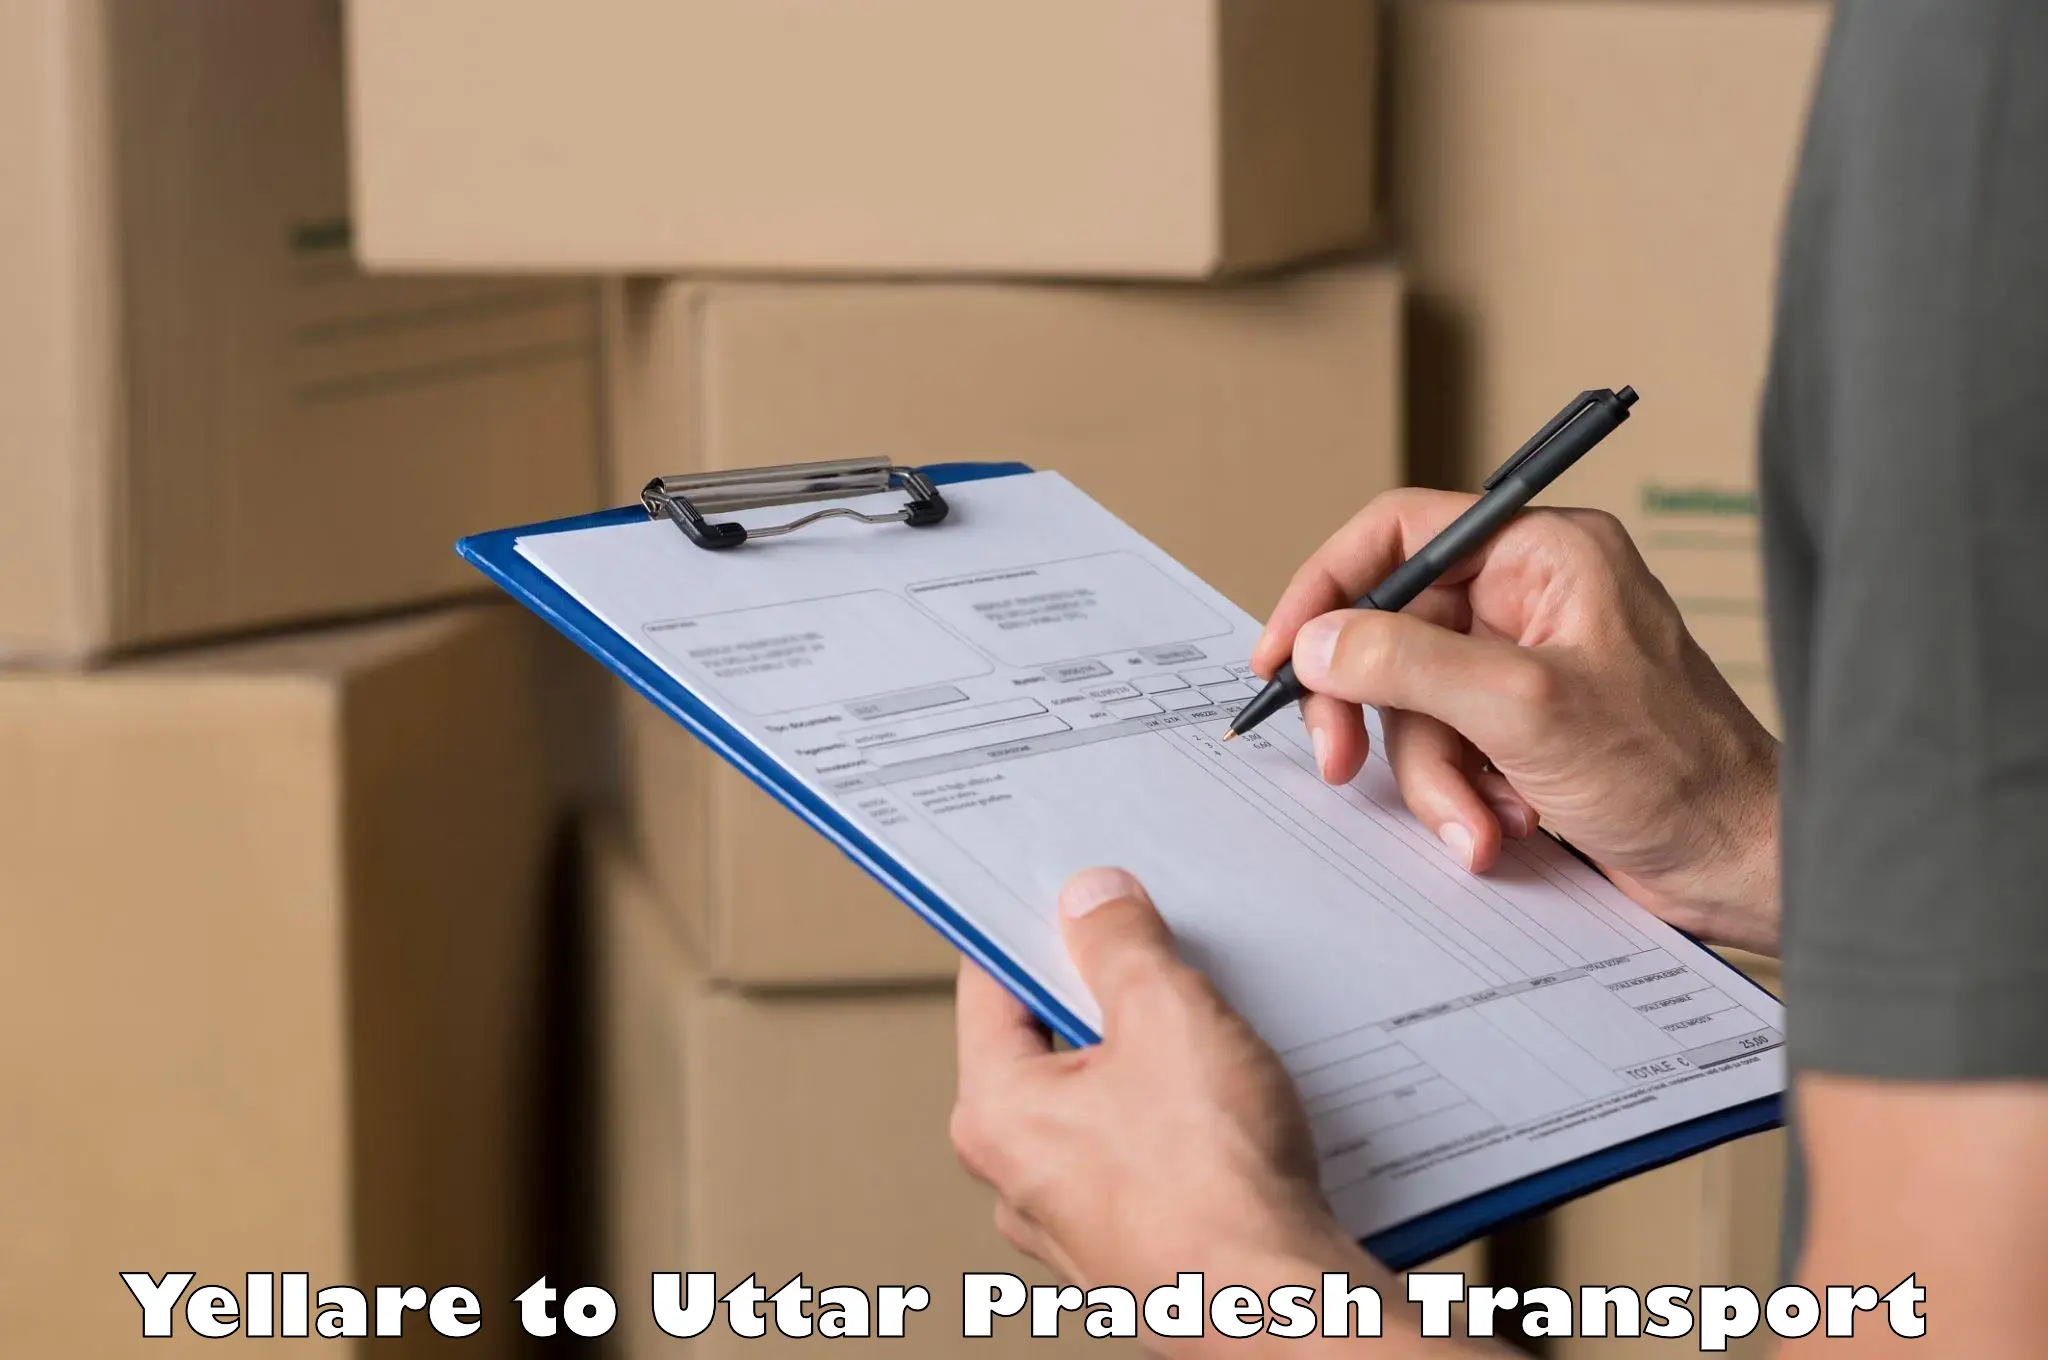 Shipping partner Yellare to Uttar Pradesh